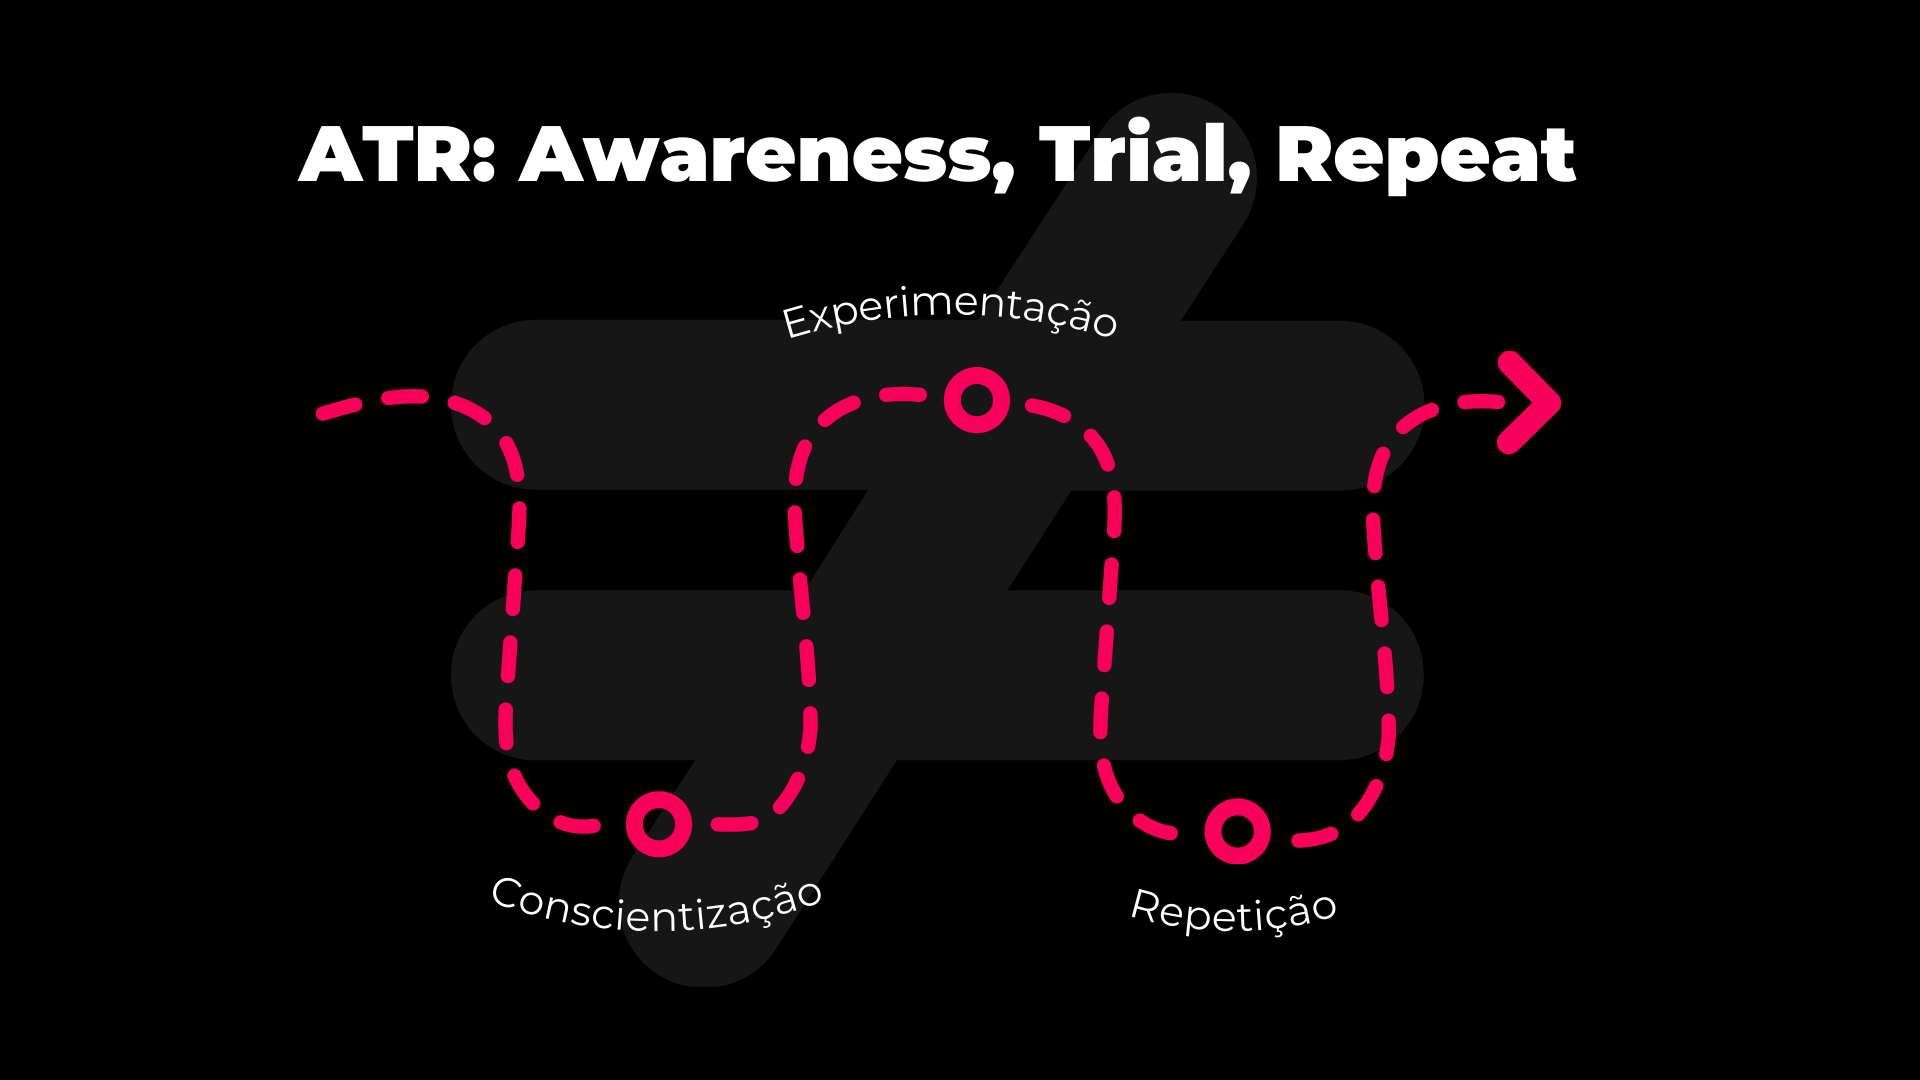 atr-awareness-trial-repeat-como-usar-essa-estrategia-no-branding